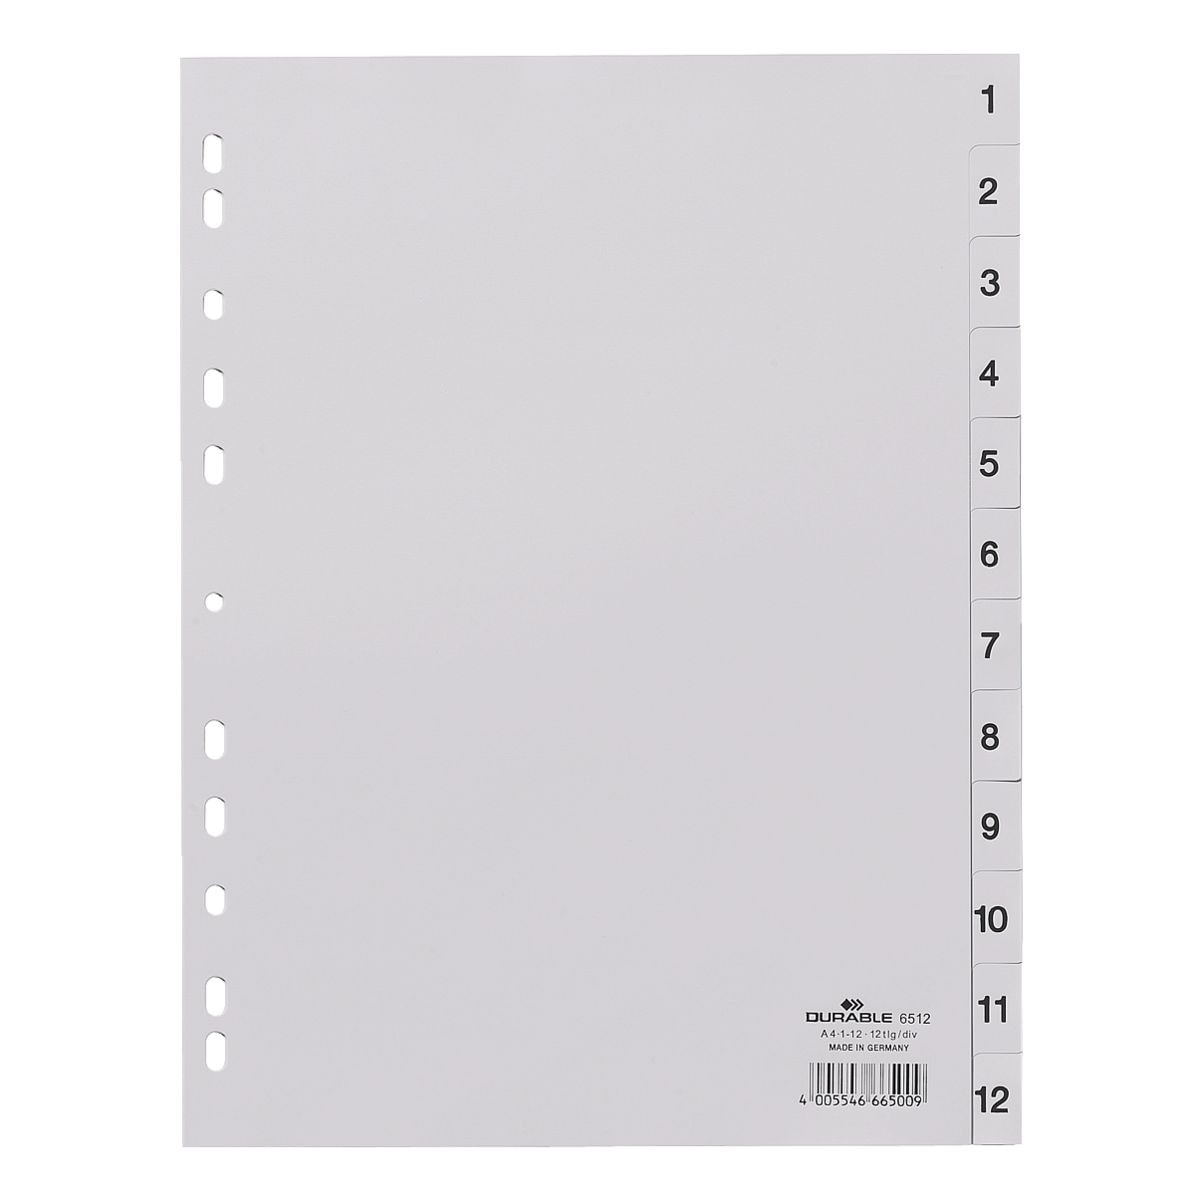 Durable tabbladen, A4, 1-12 12-delig, grijs, kunststof